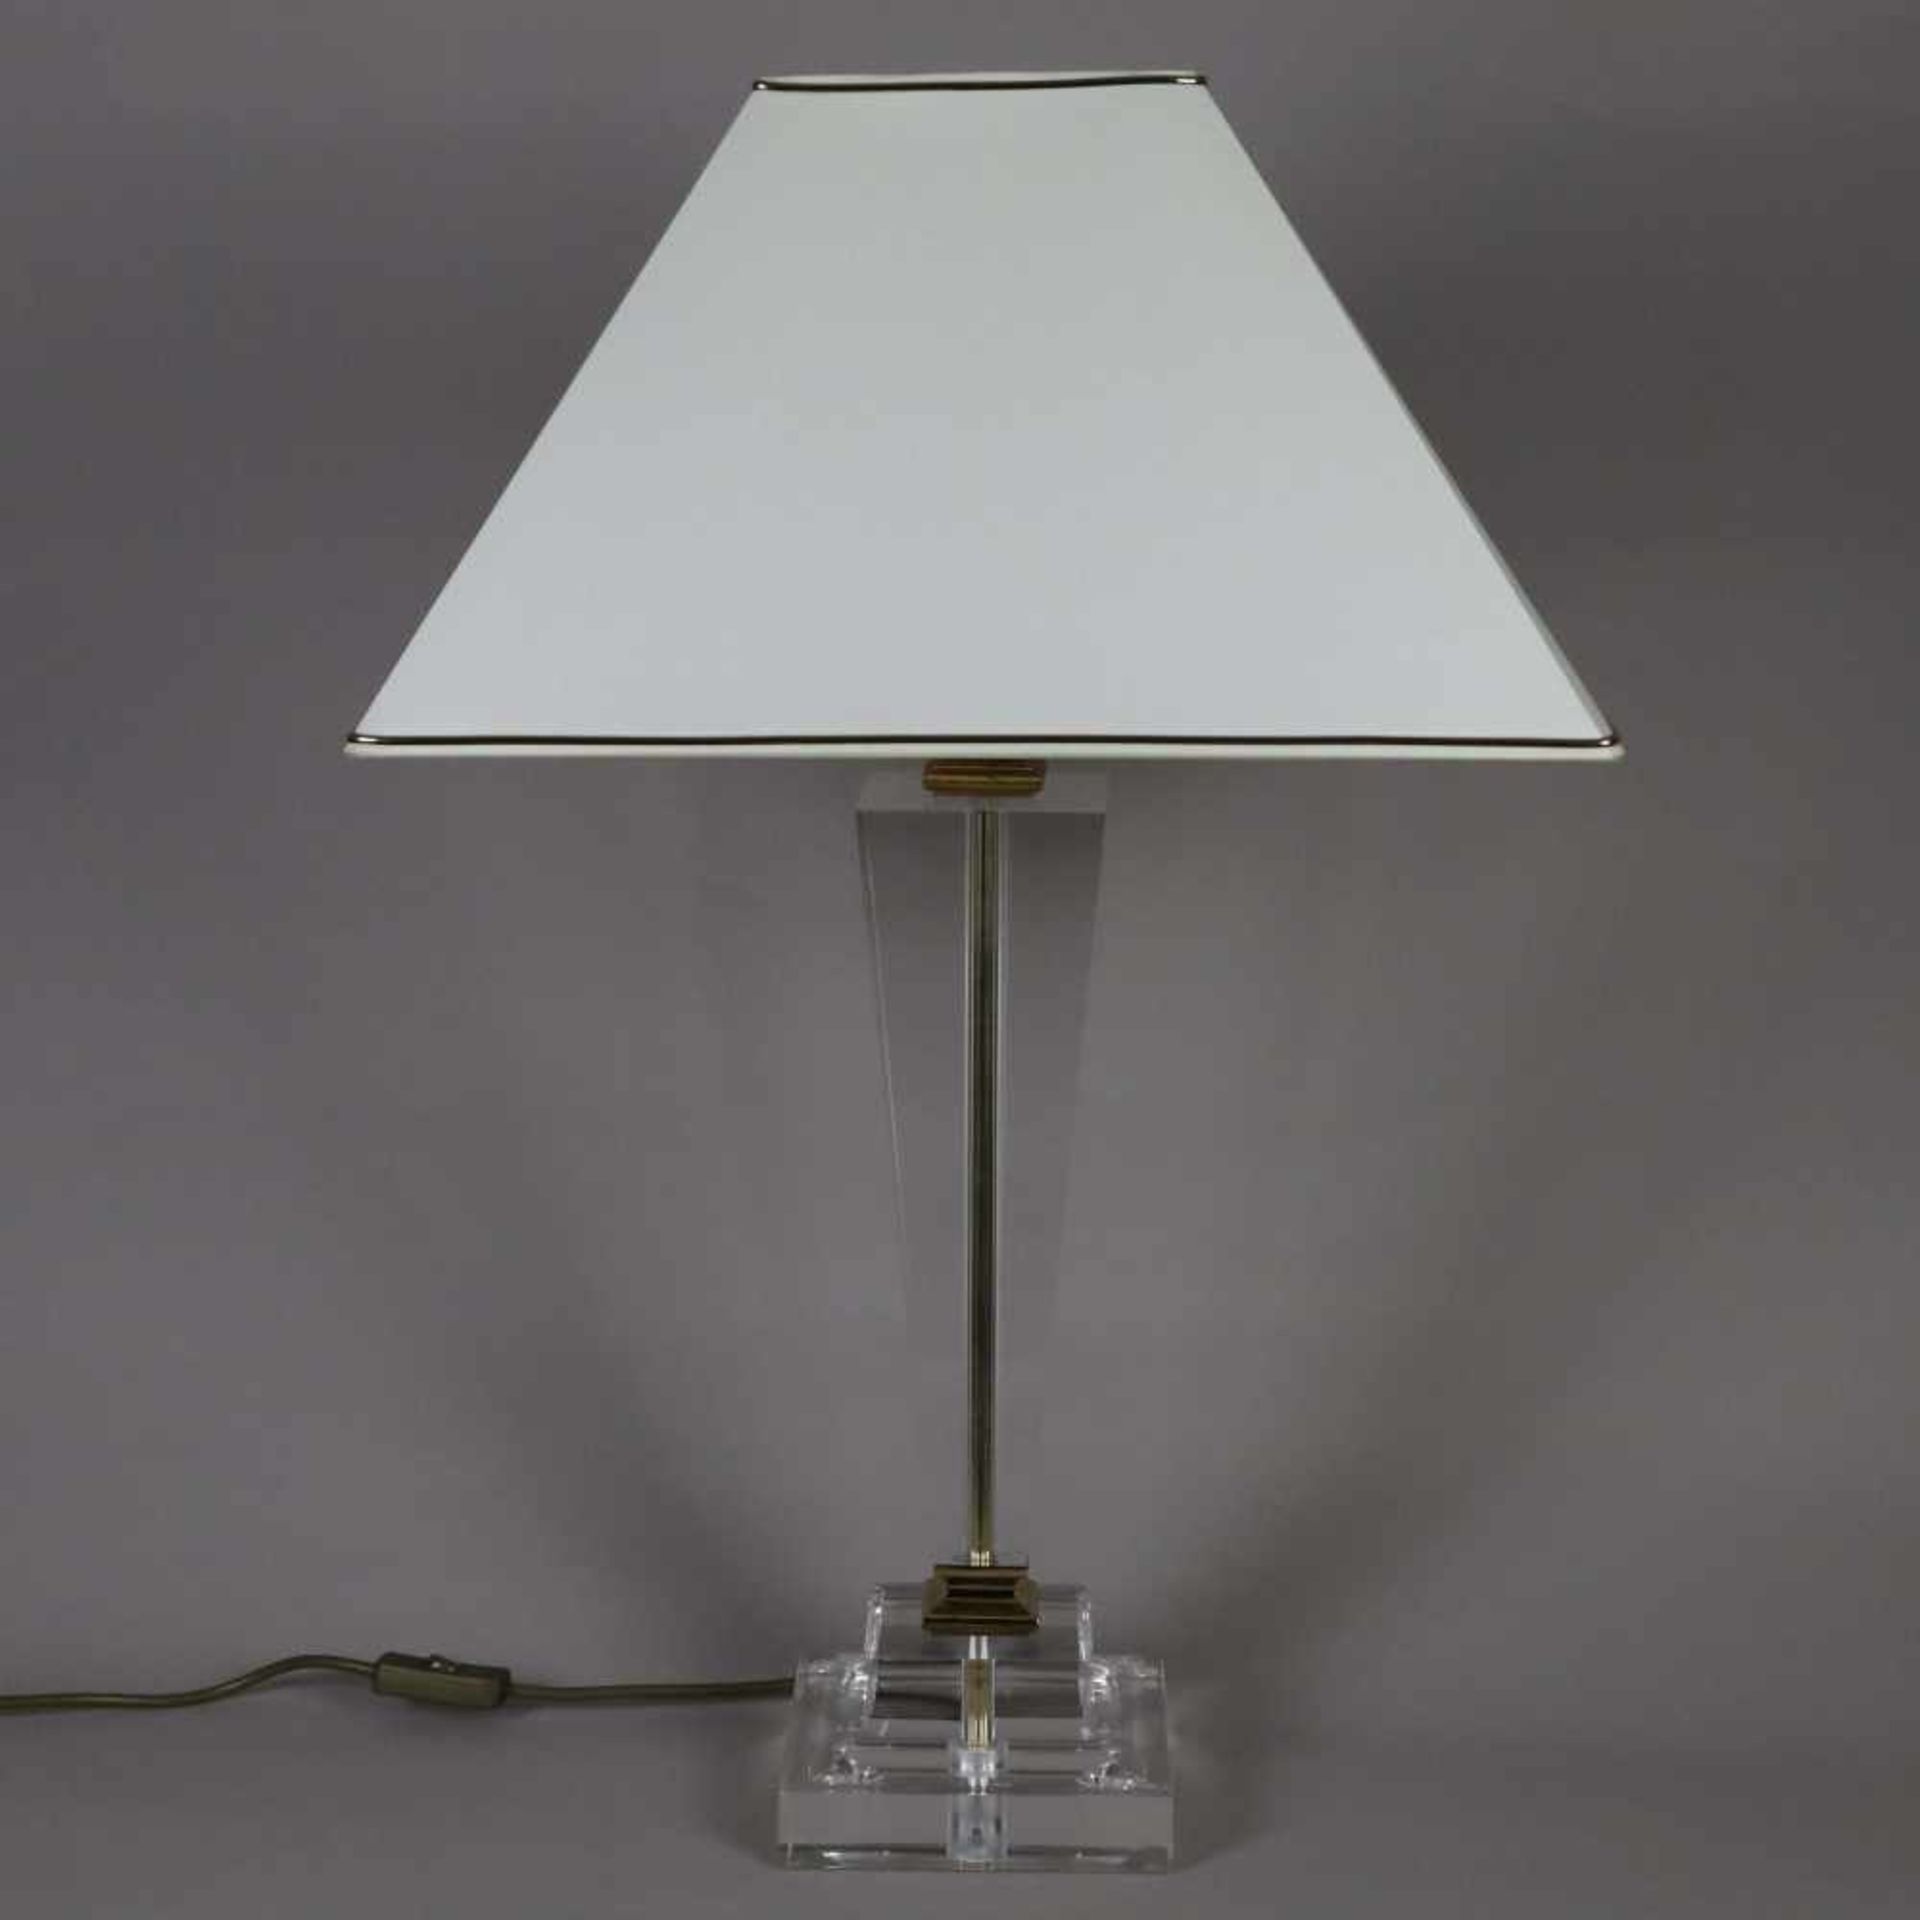 Tischlampe - farbloses Plexiglas/Messing, rechteckiger gestufter Stand und konischer Schaft aus